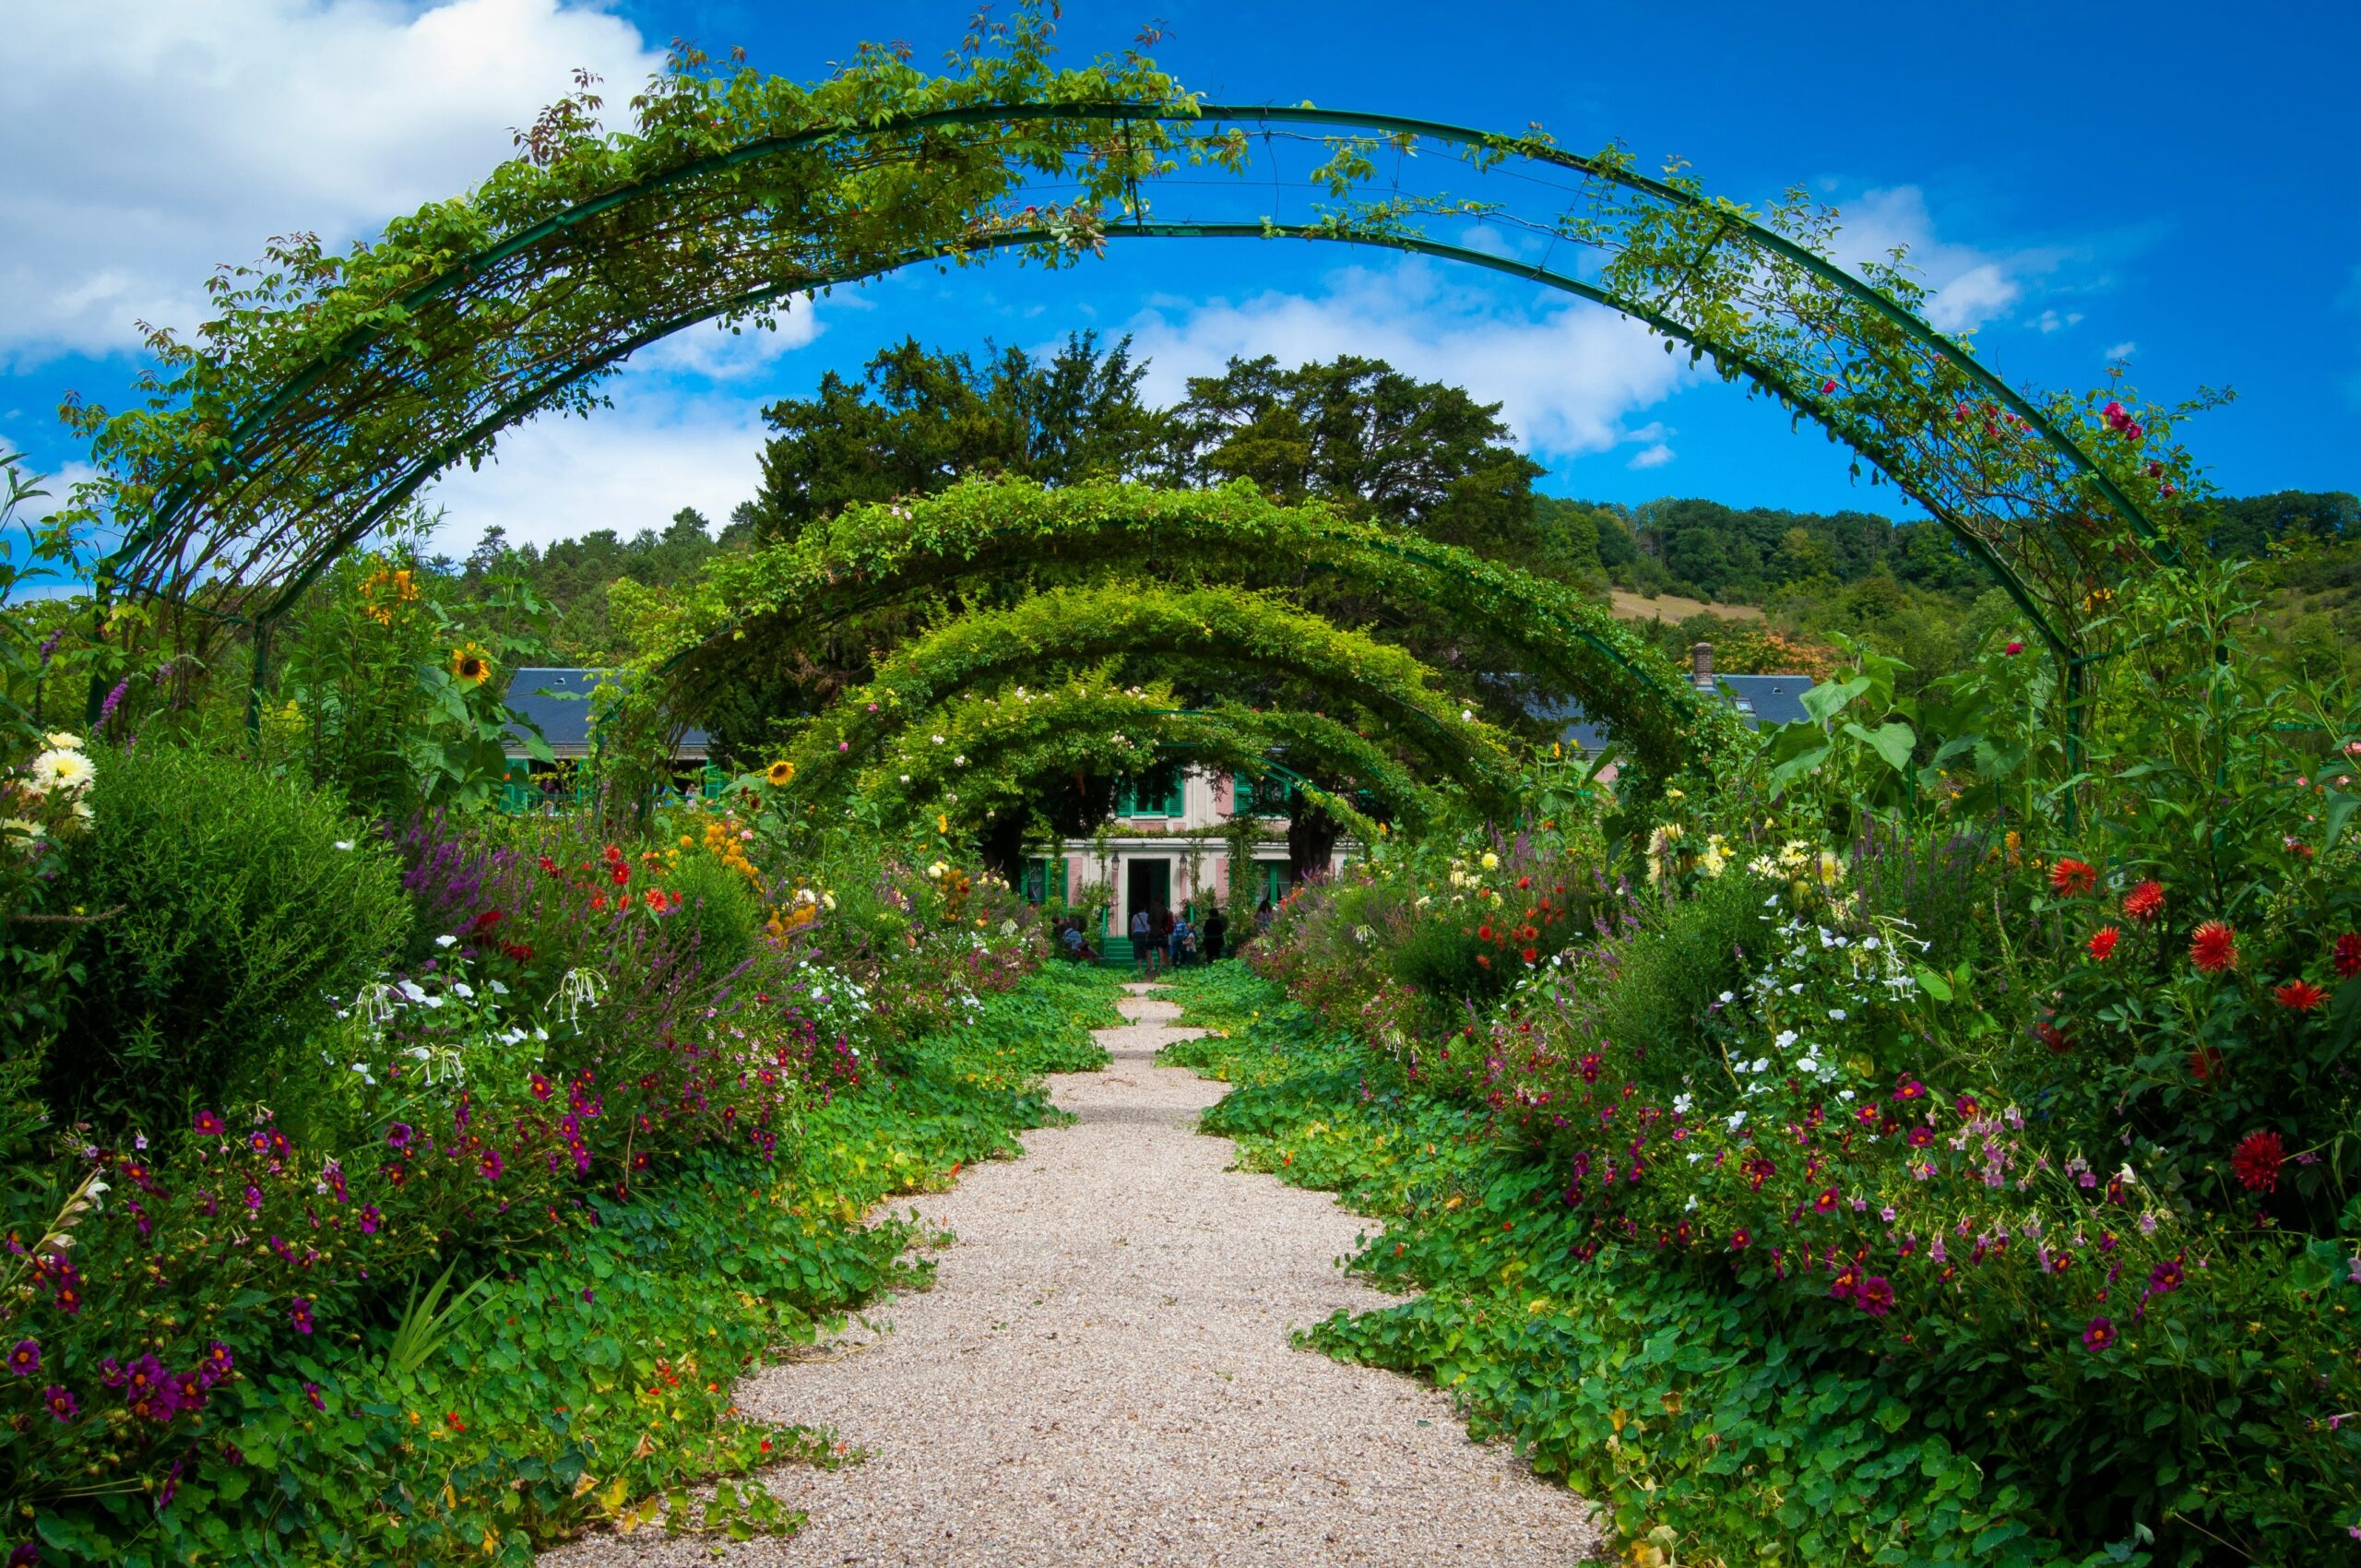 Der Garten vom Maler Claude Monet in seinem ehemaligen Heimatdorf Giverny. 